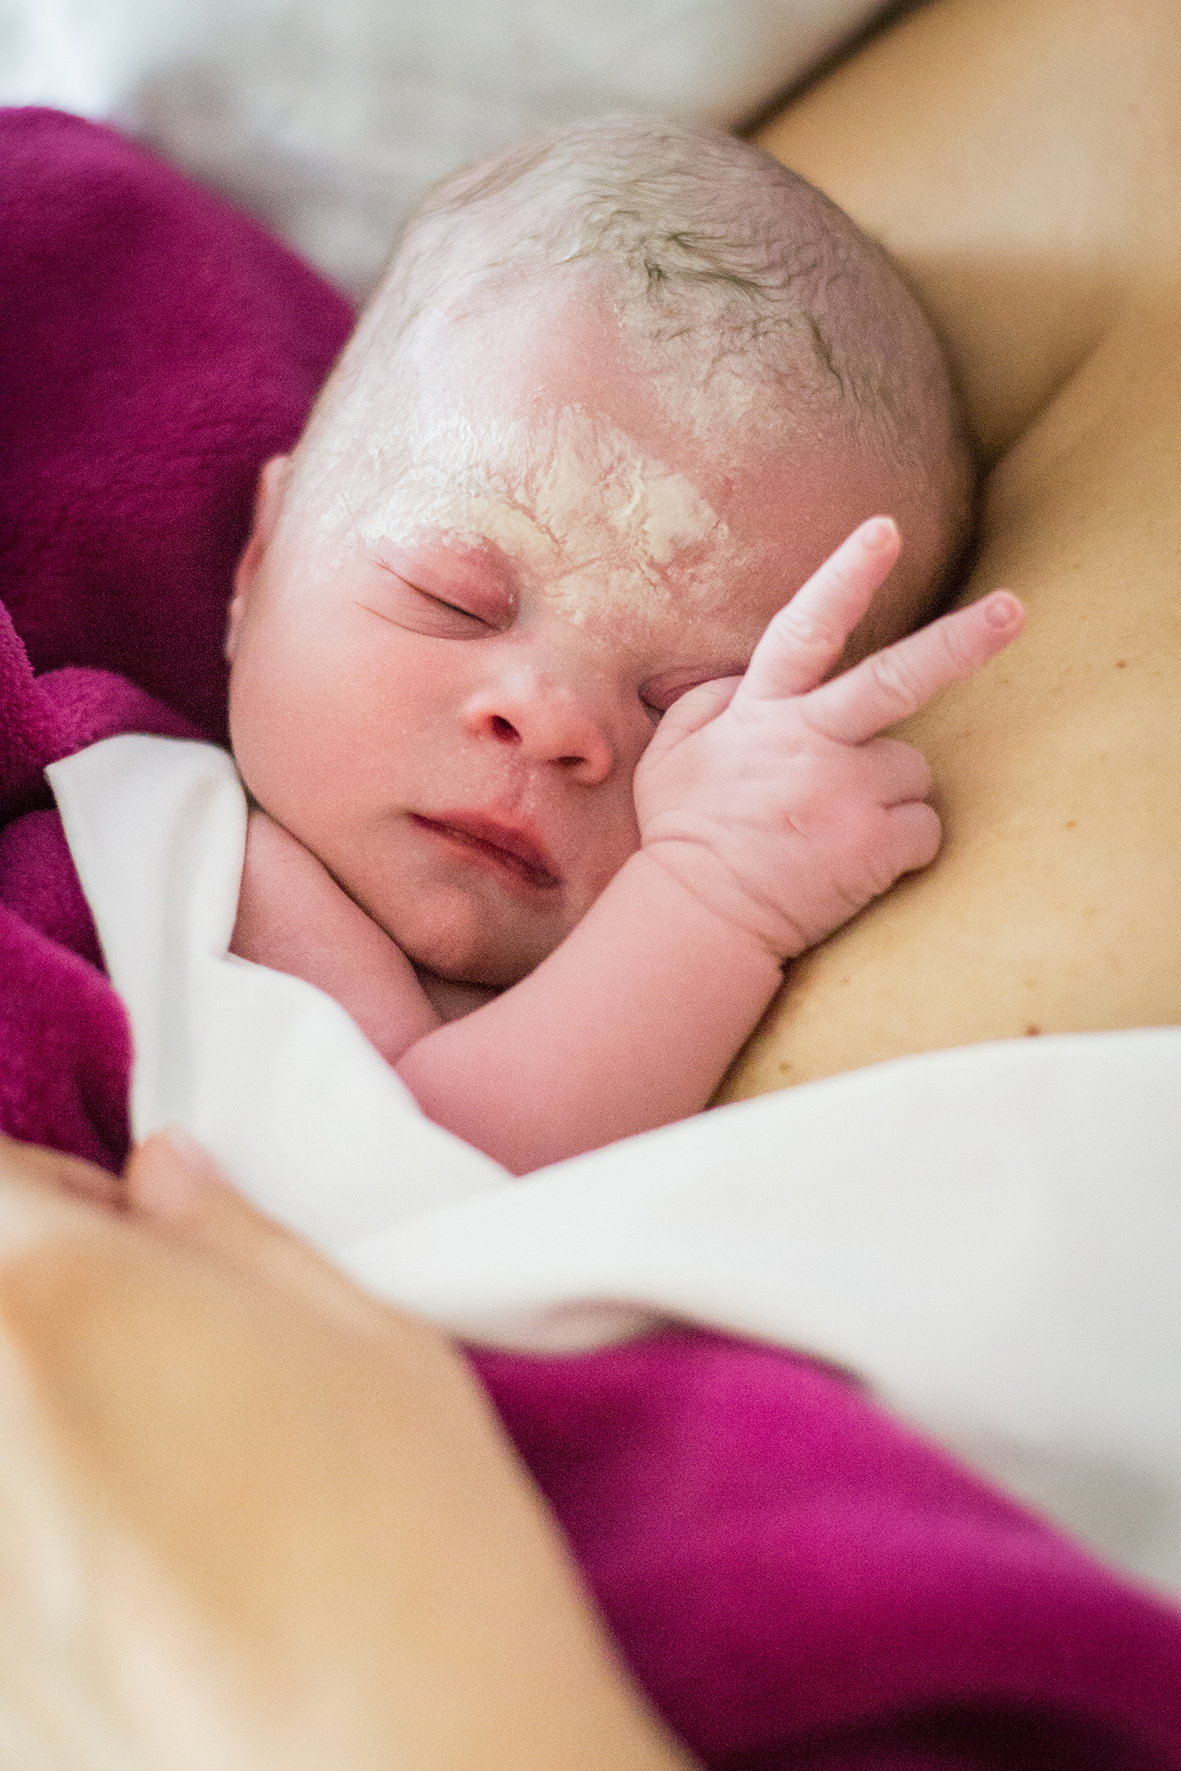 Békés szülés/születés fotókiállítás - a várandósság, szülés/születés háborítatlansága a WHO ajánlások tükrében